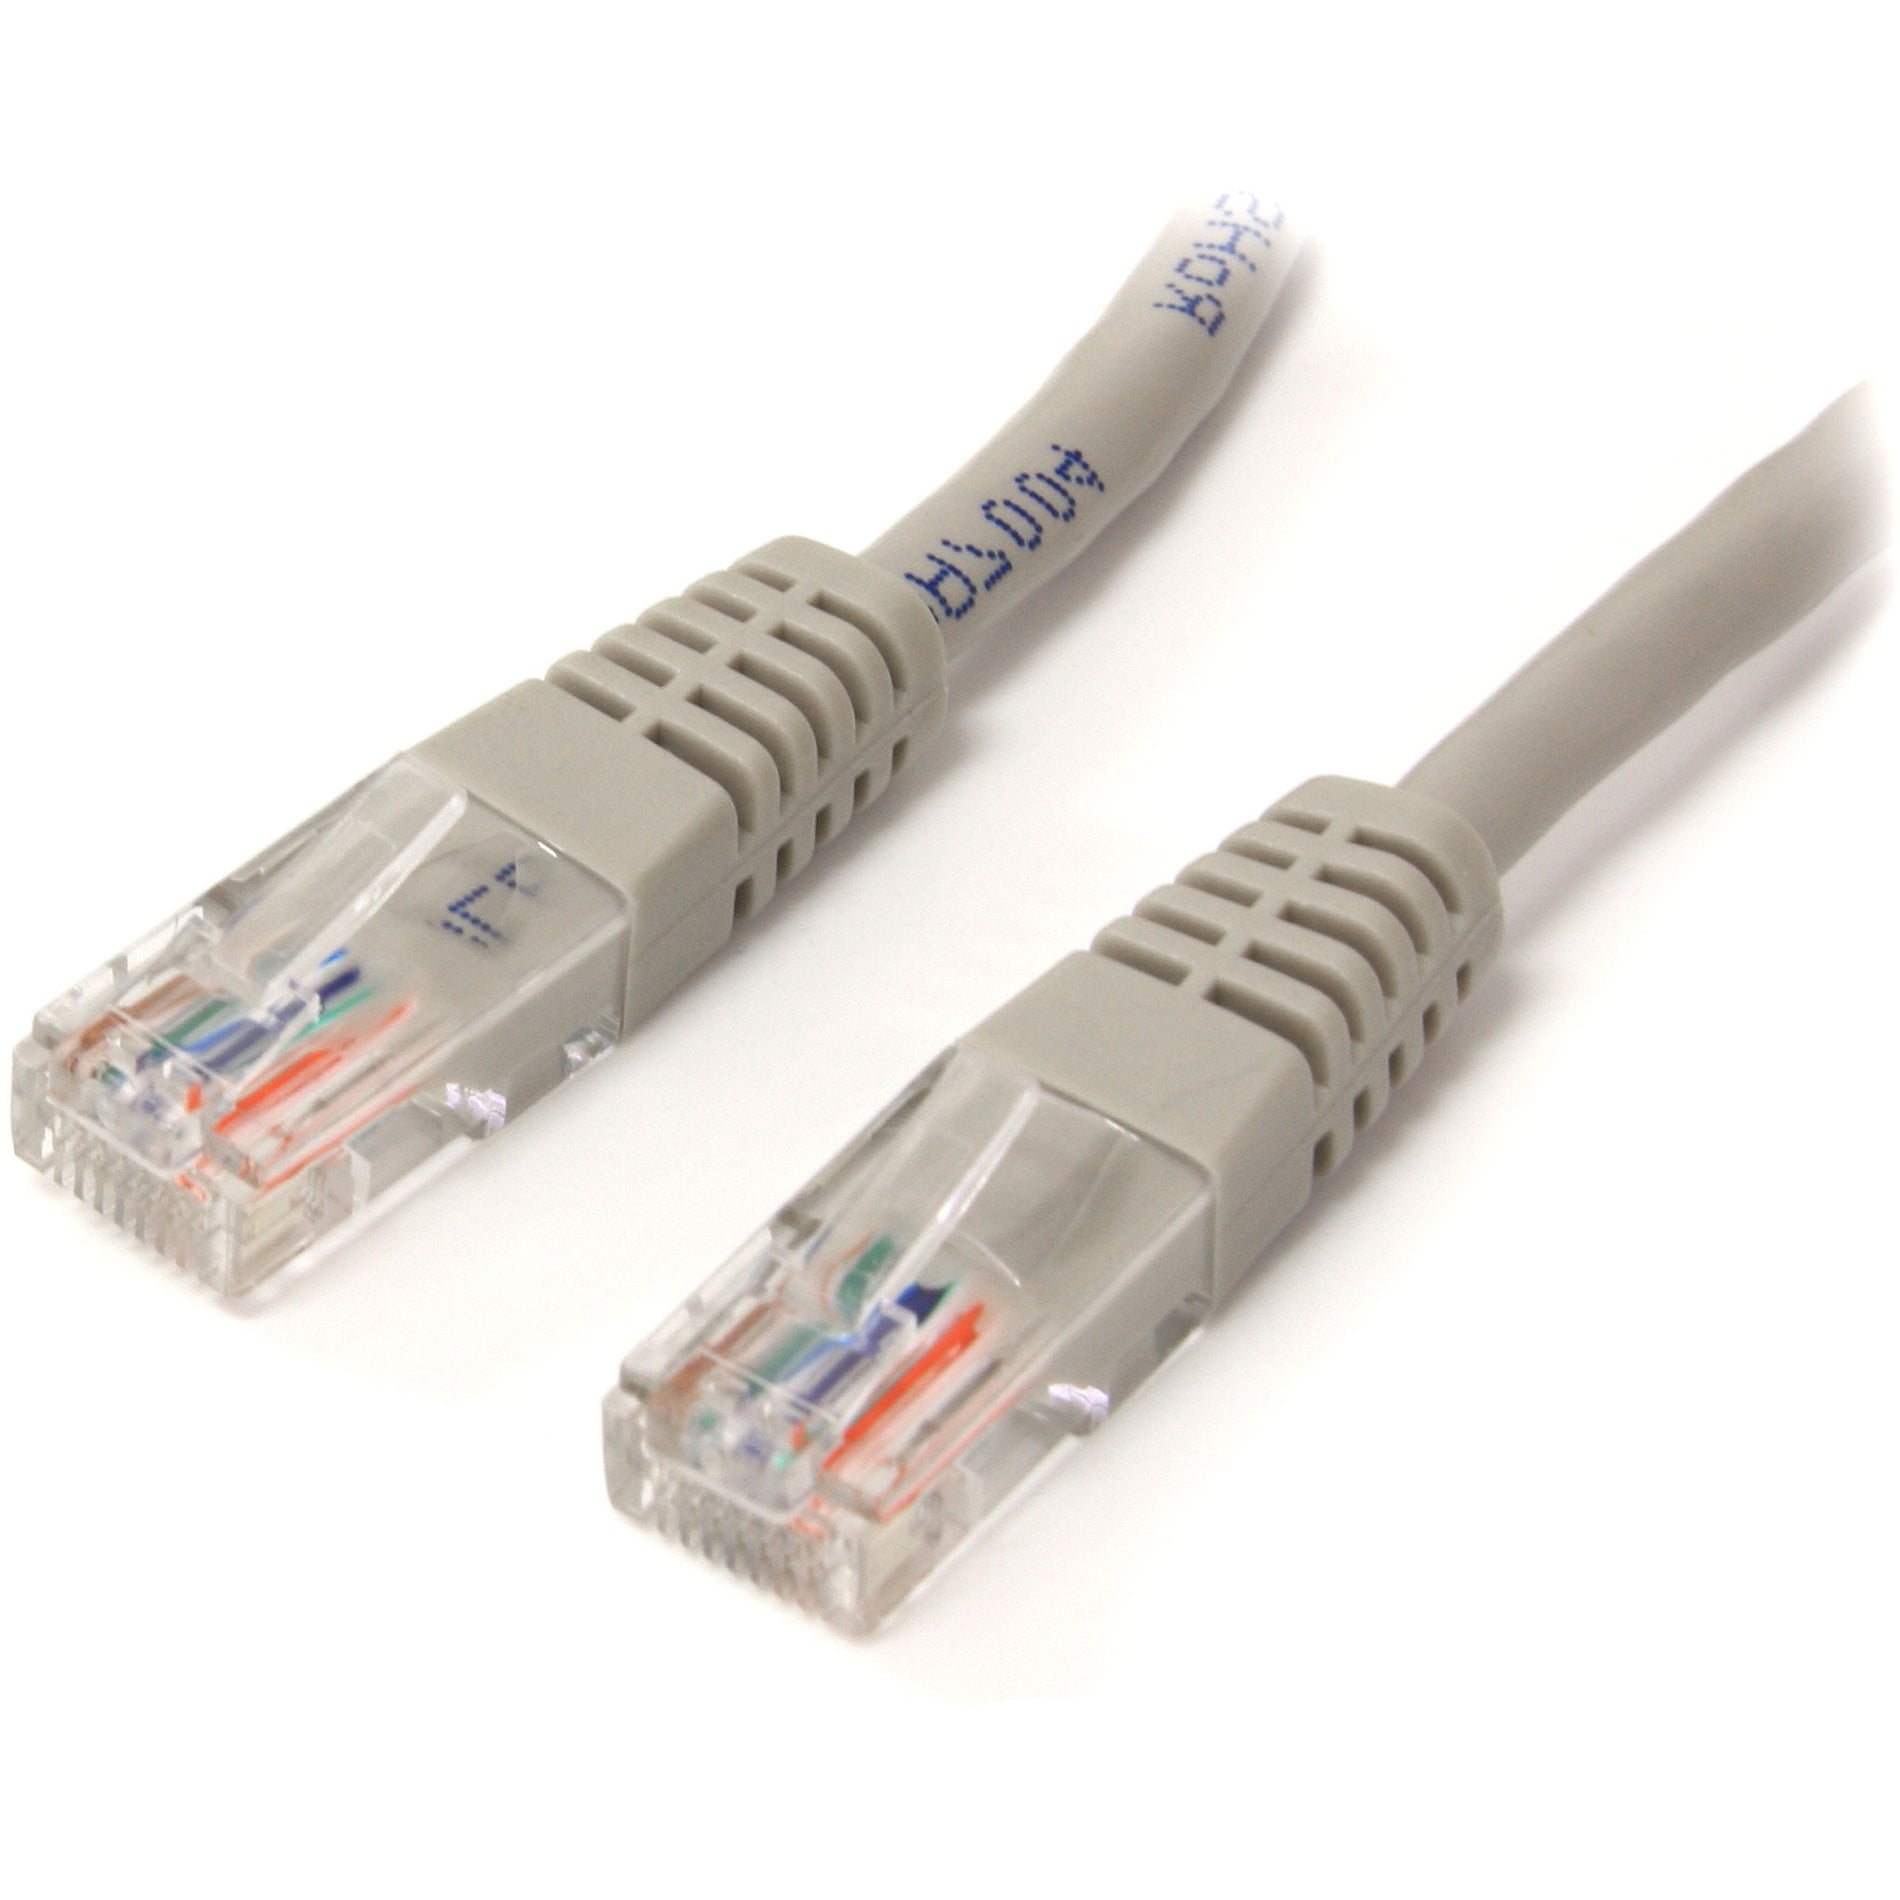 Marca: StarTech.com   Cable de conexión UTP Cat5e moldeado gris de 10 pies con garantía de por vida conectores de oro de 50 micrones